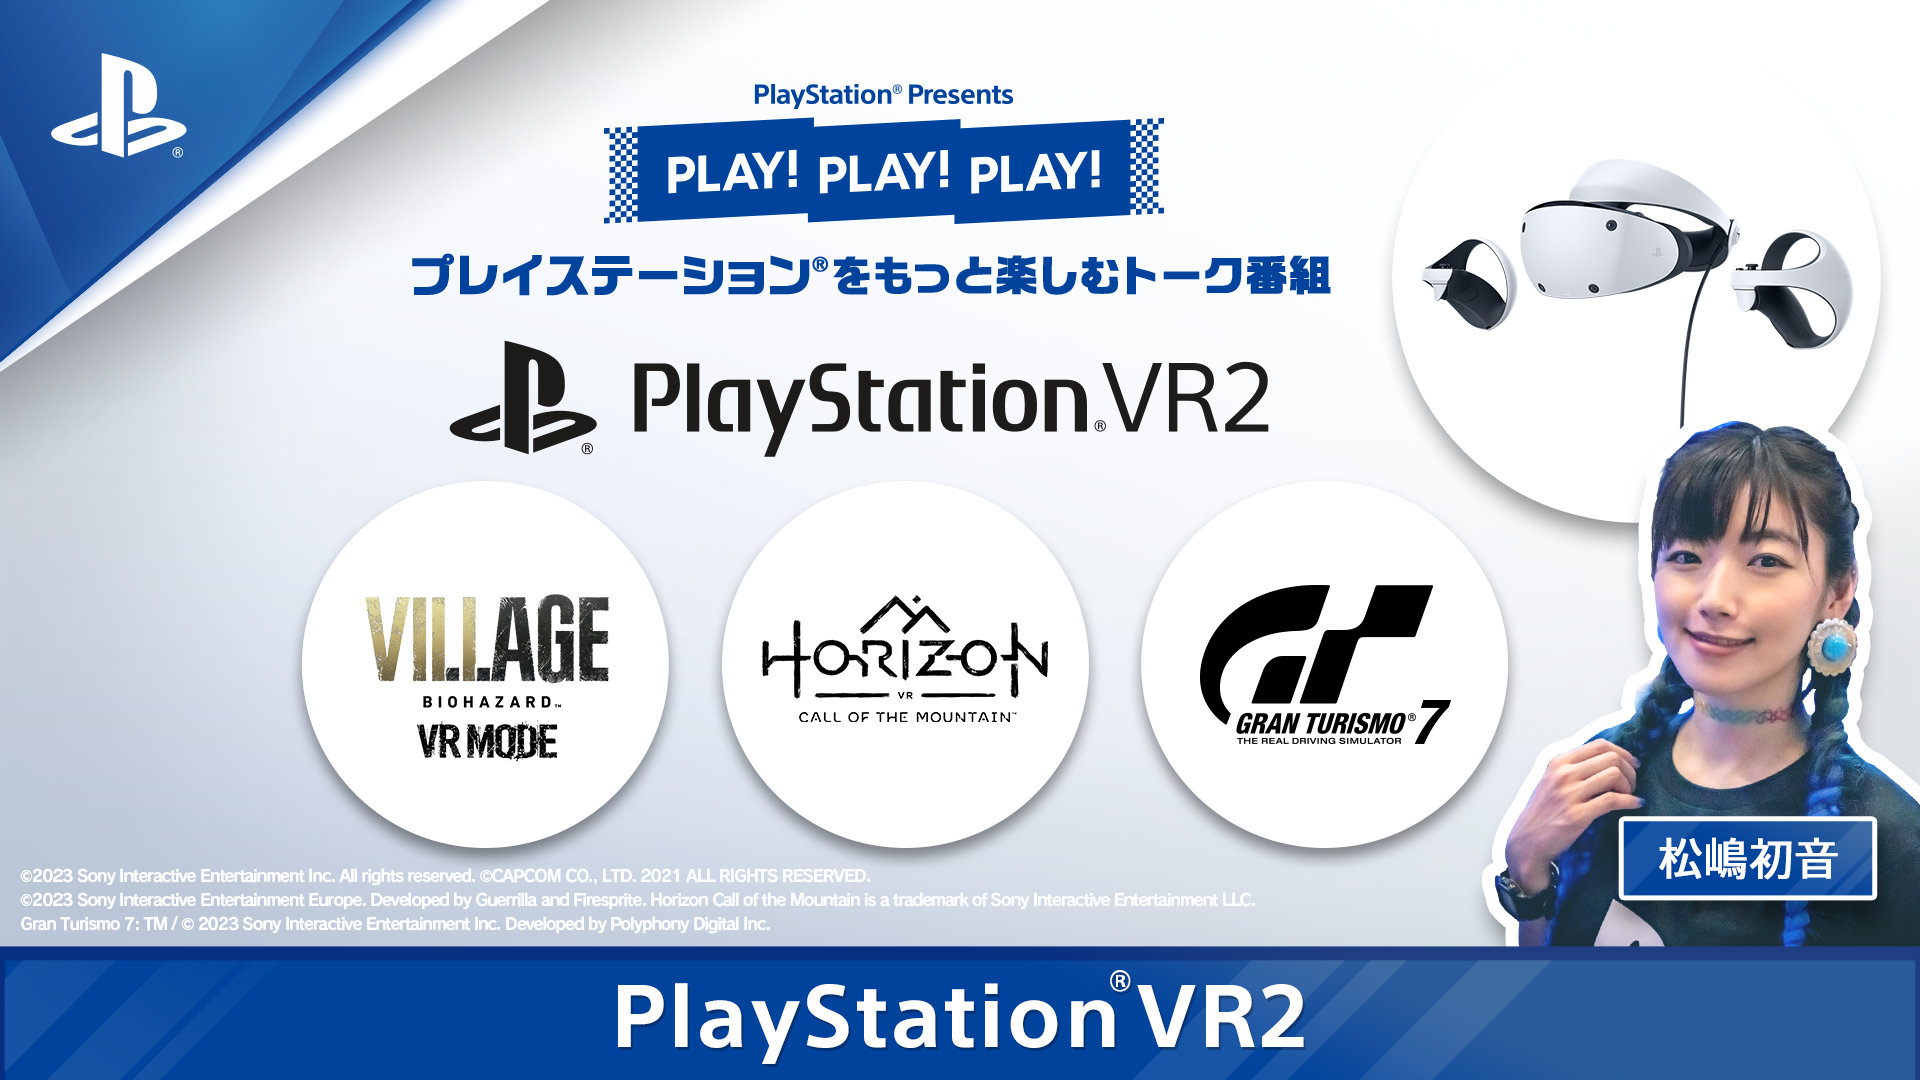 発売間近のPS VR2を特集。「PLAY! PLAY! PLAY!」最新回はHorizon